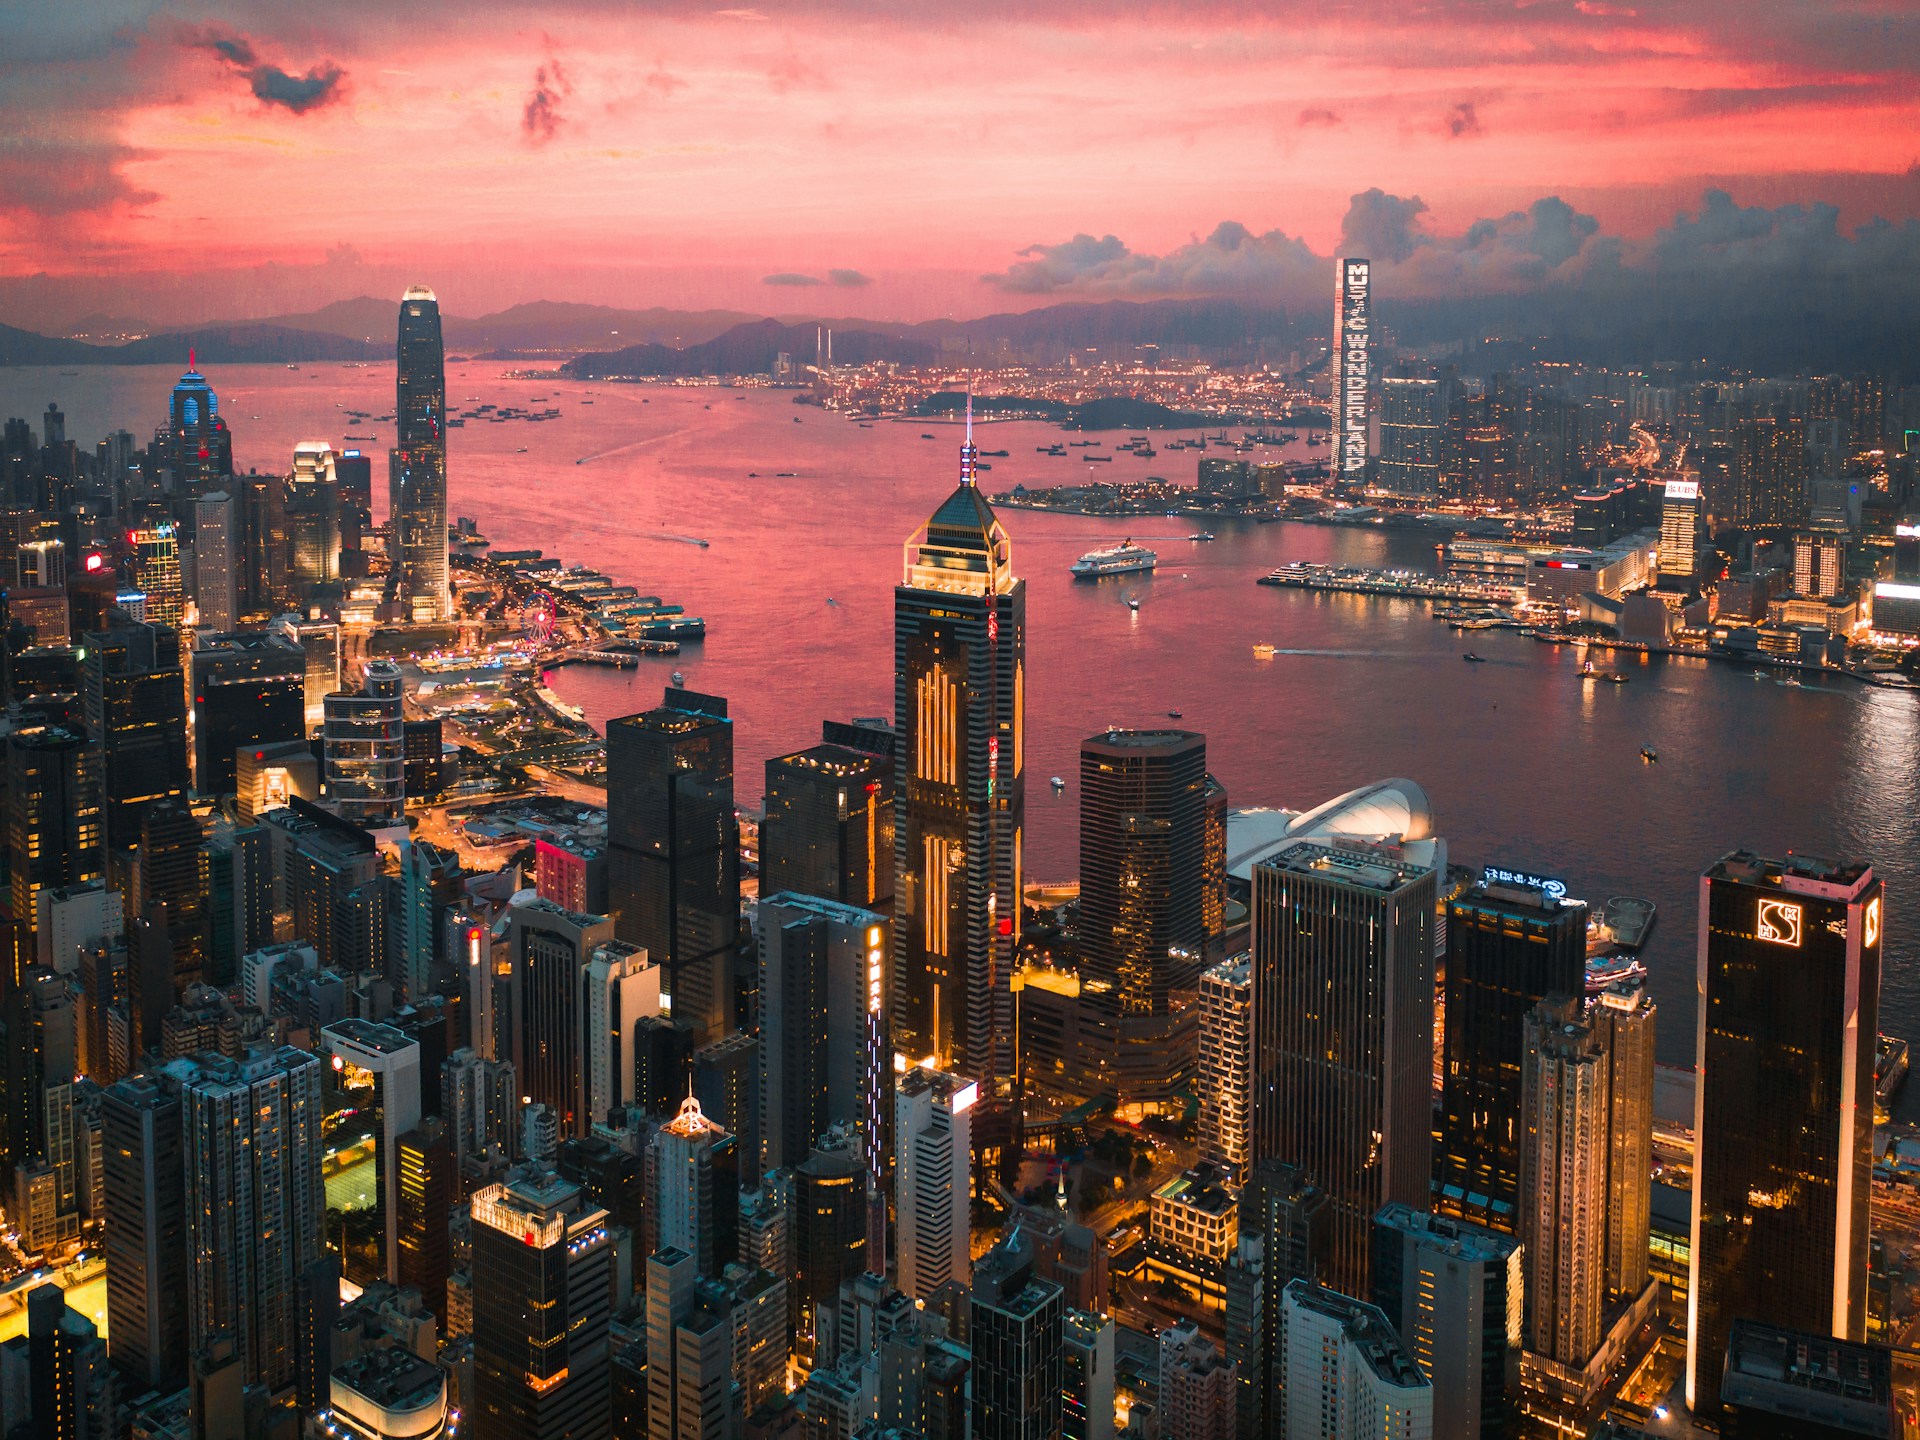 Victoria Harbor, Hong Kong at sunset